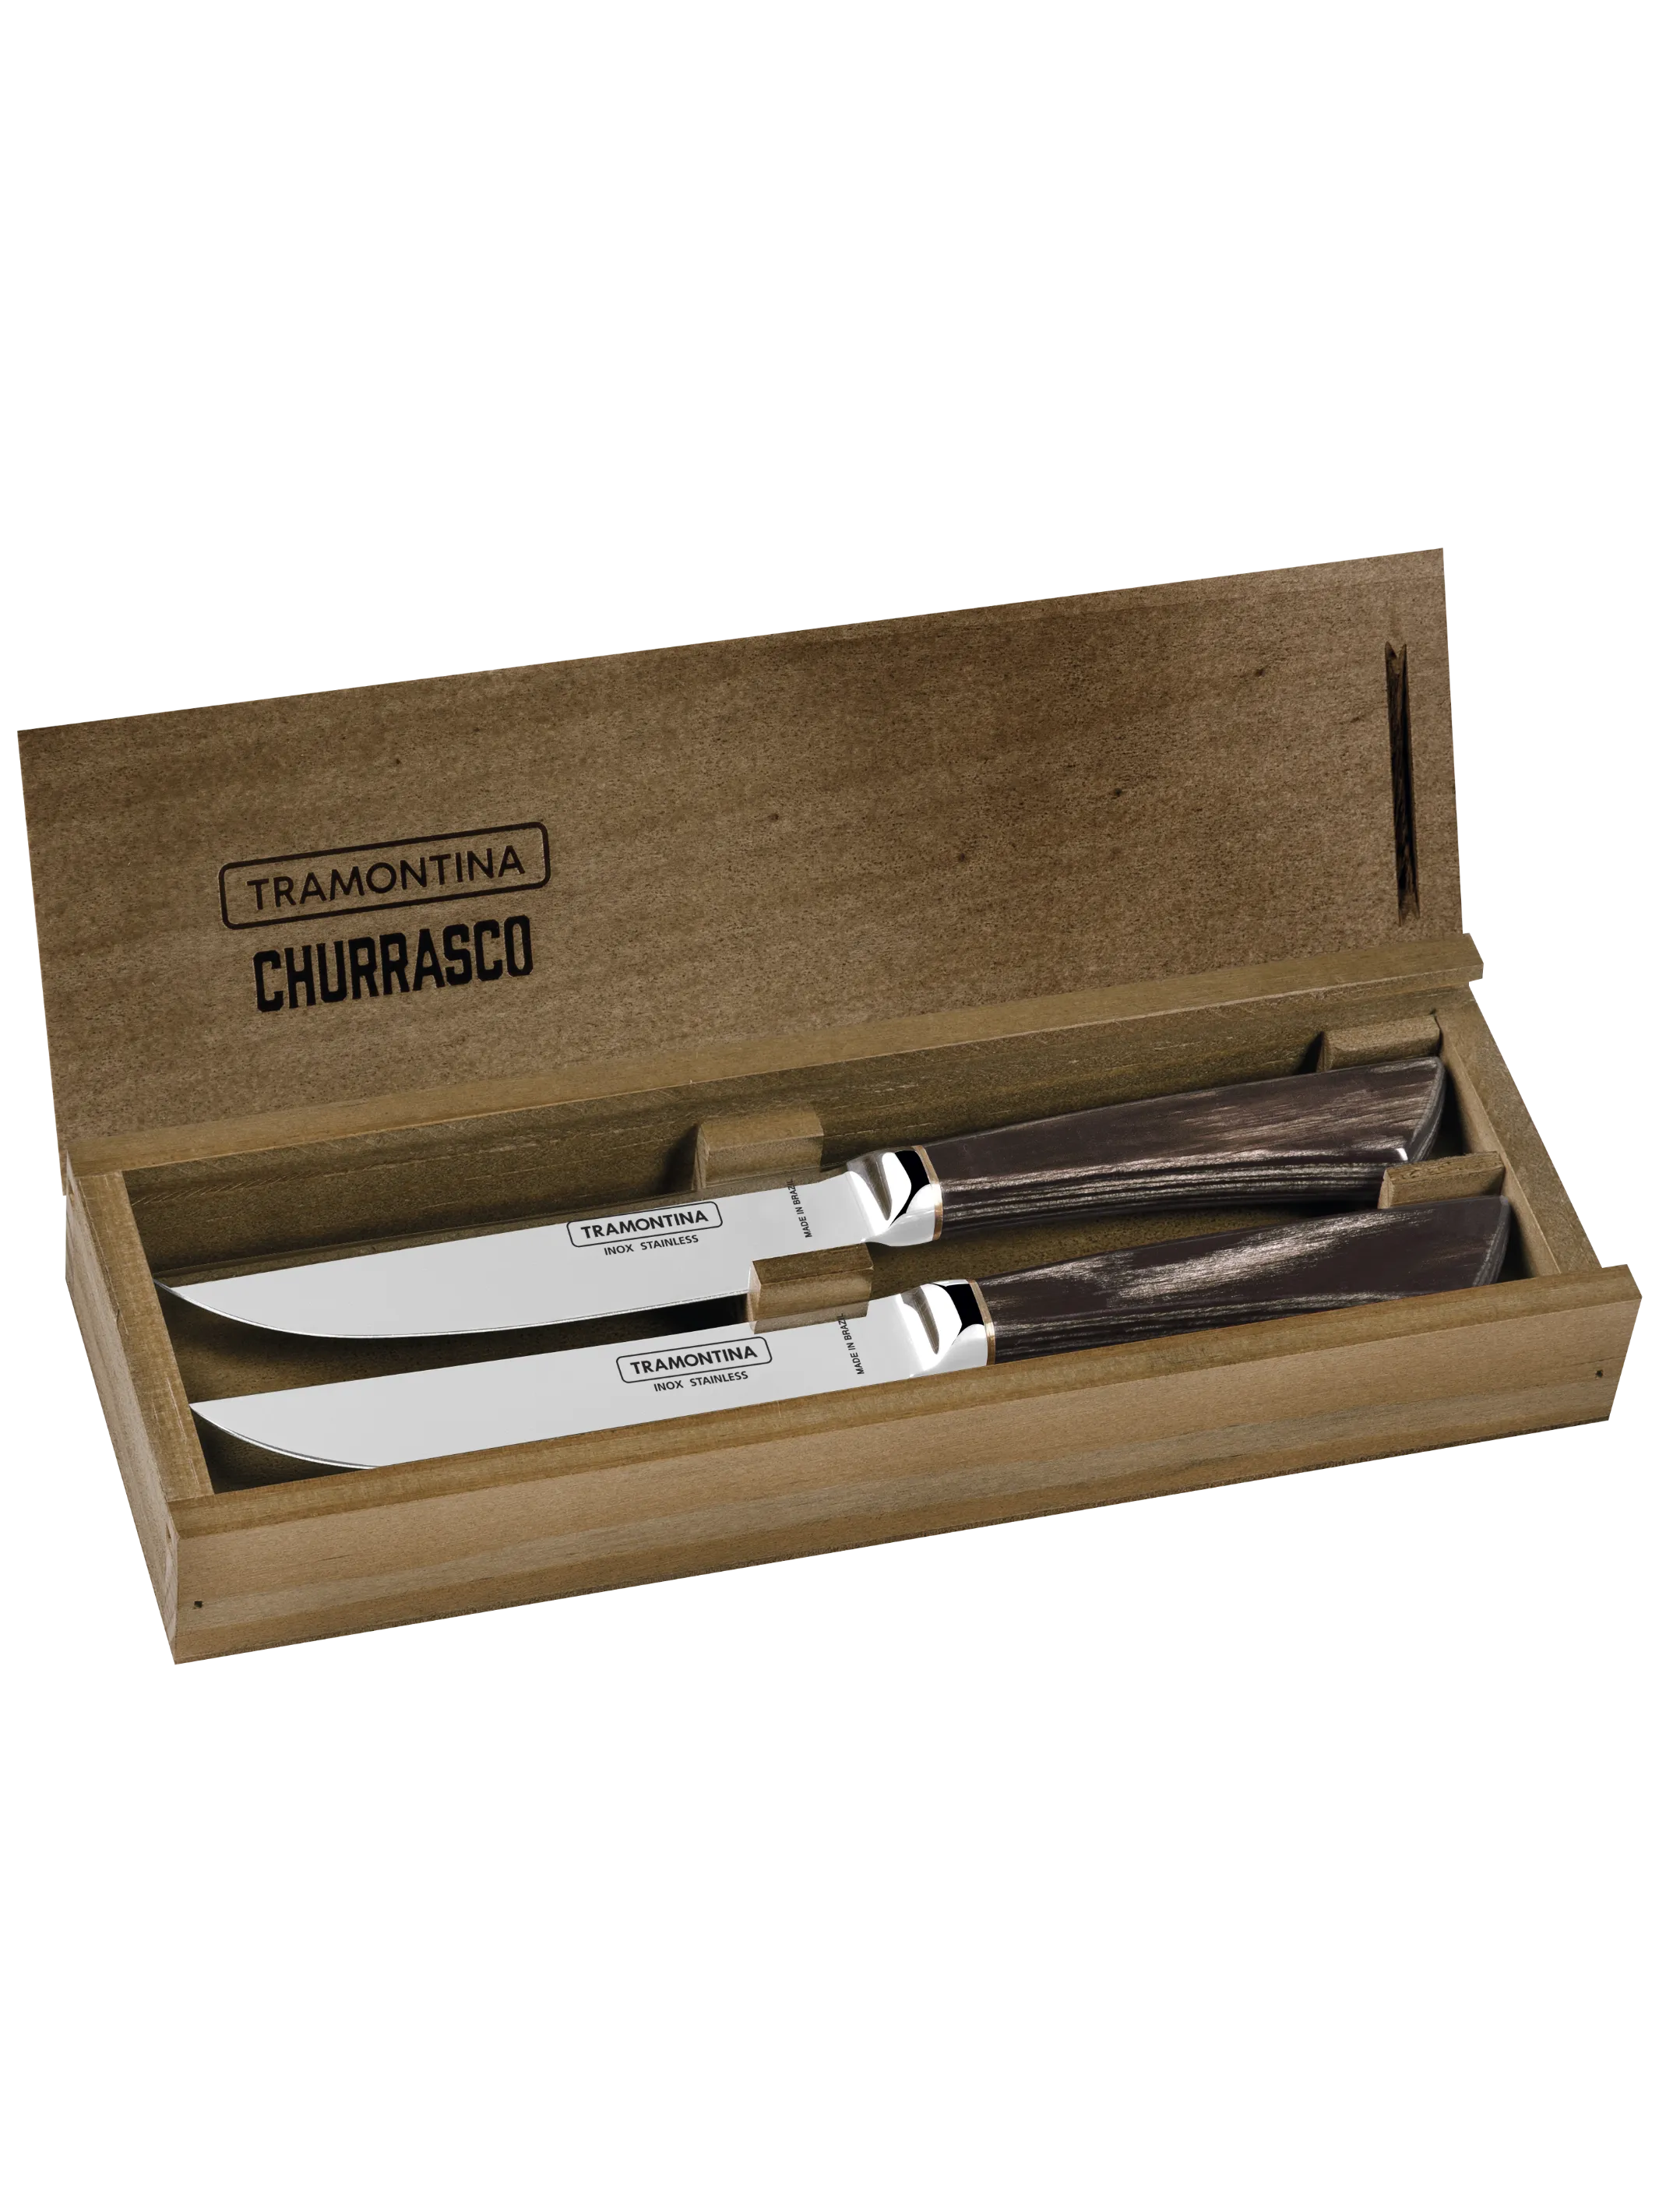 Churrasco Pampas kovácsoltvas steak kés szett fa dobozban 2db